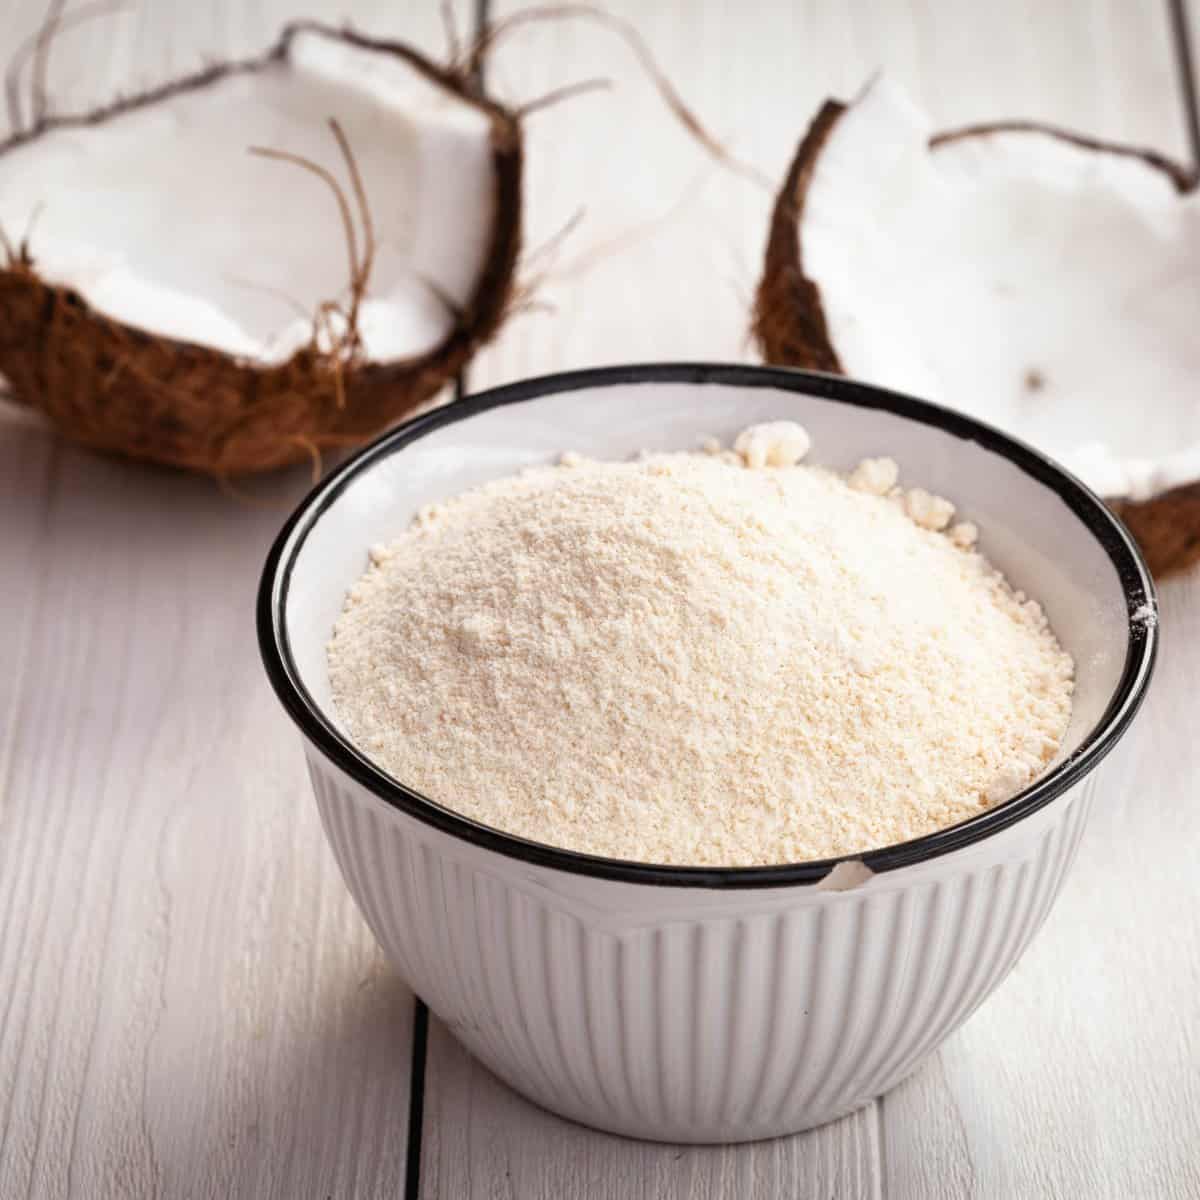 What is coconut flour